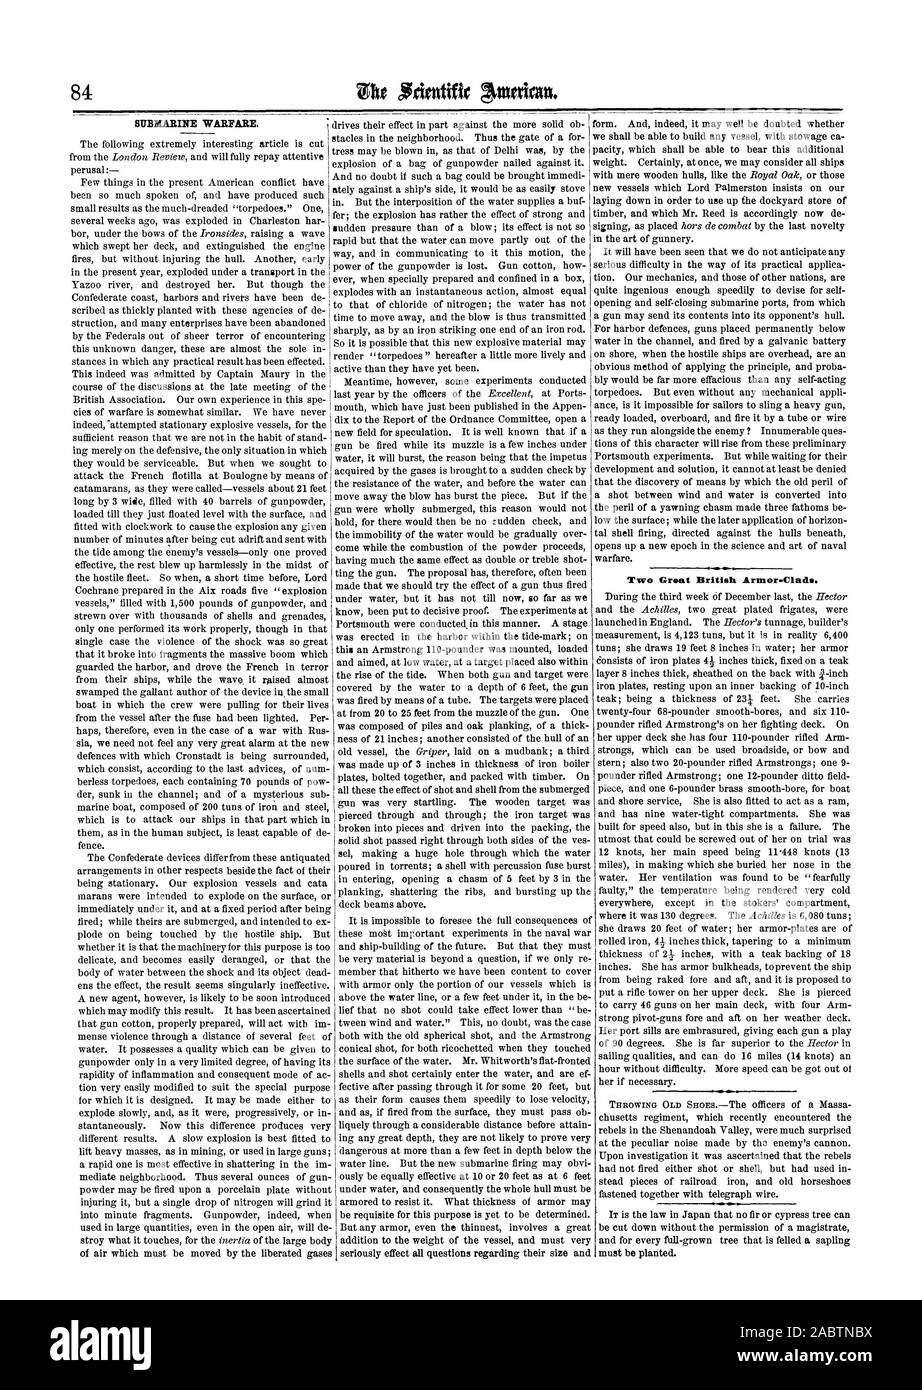 SUBMARINE WARFARE., scientific american, 1864-02-06 Stock Photo